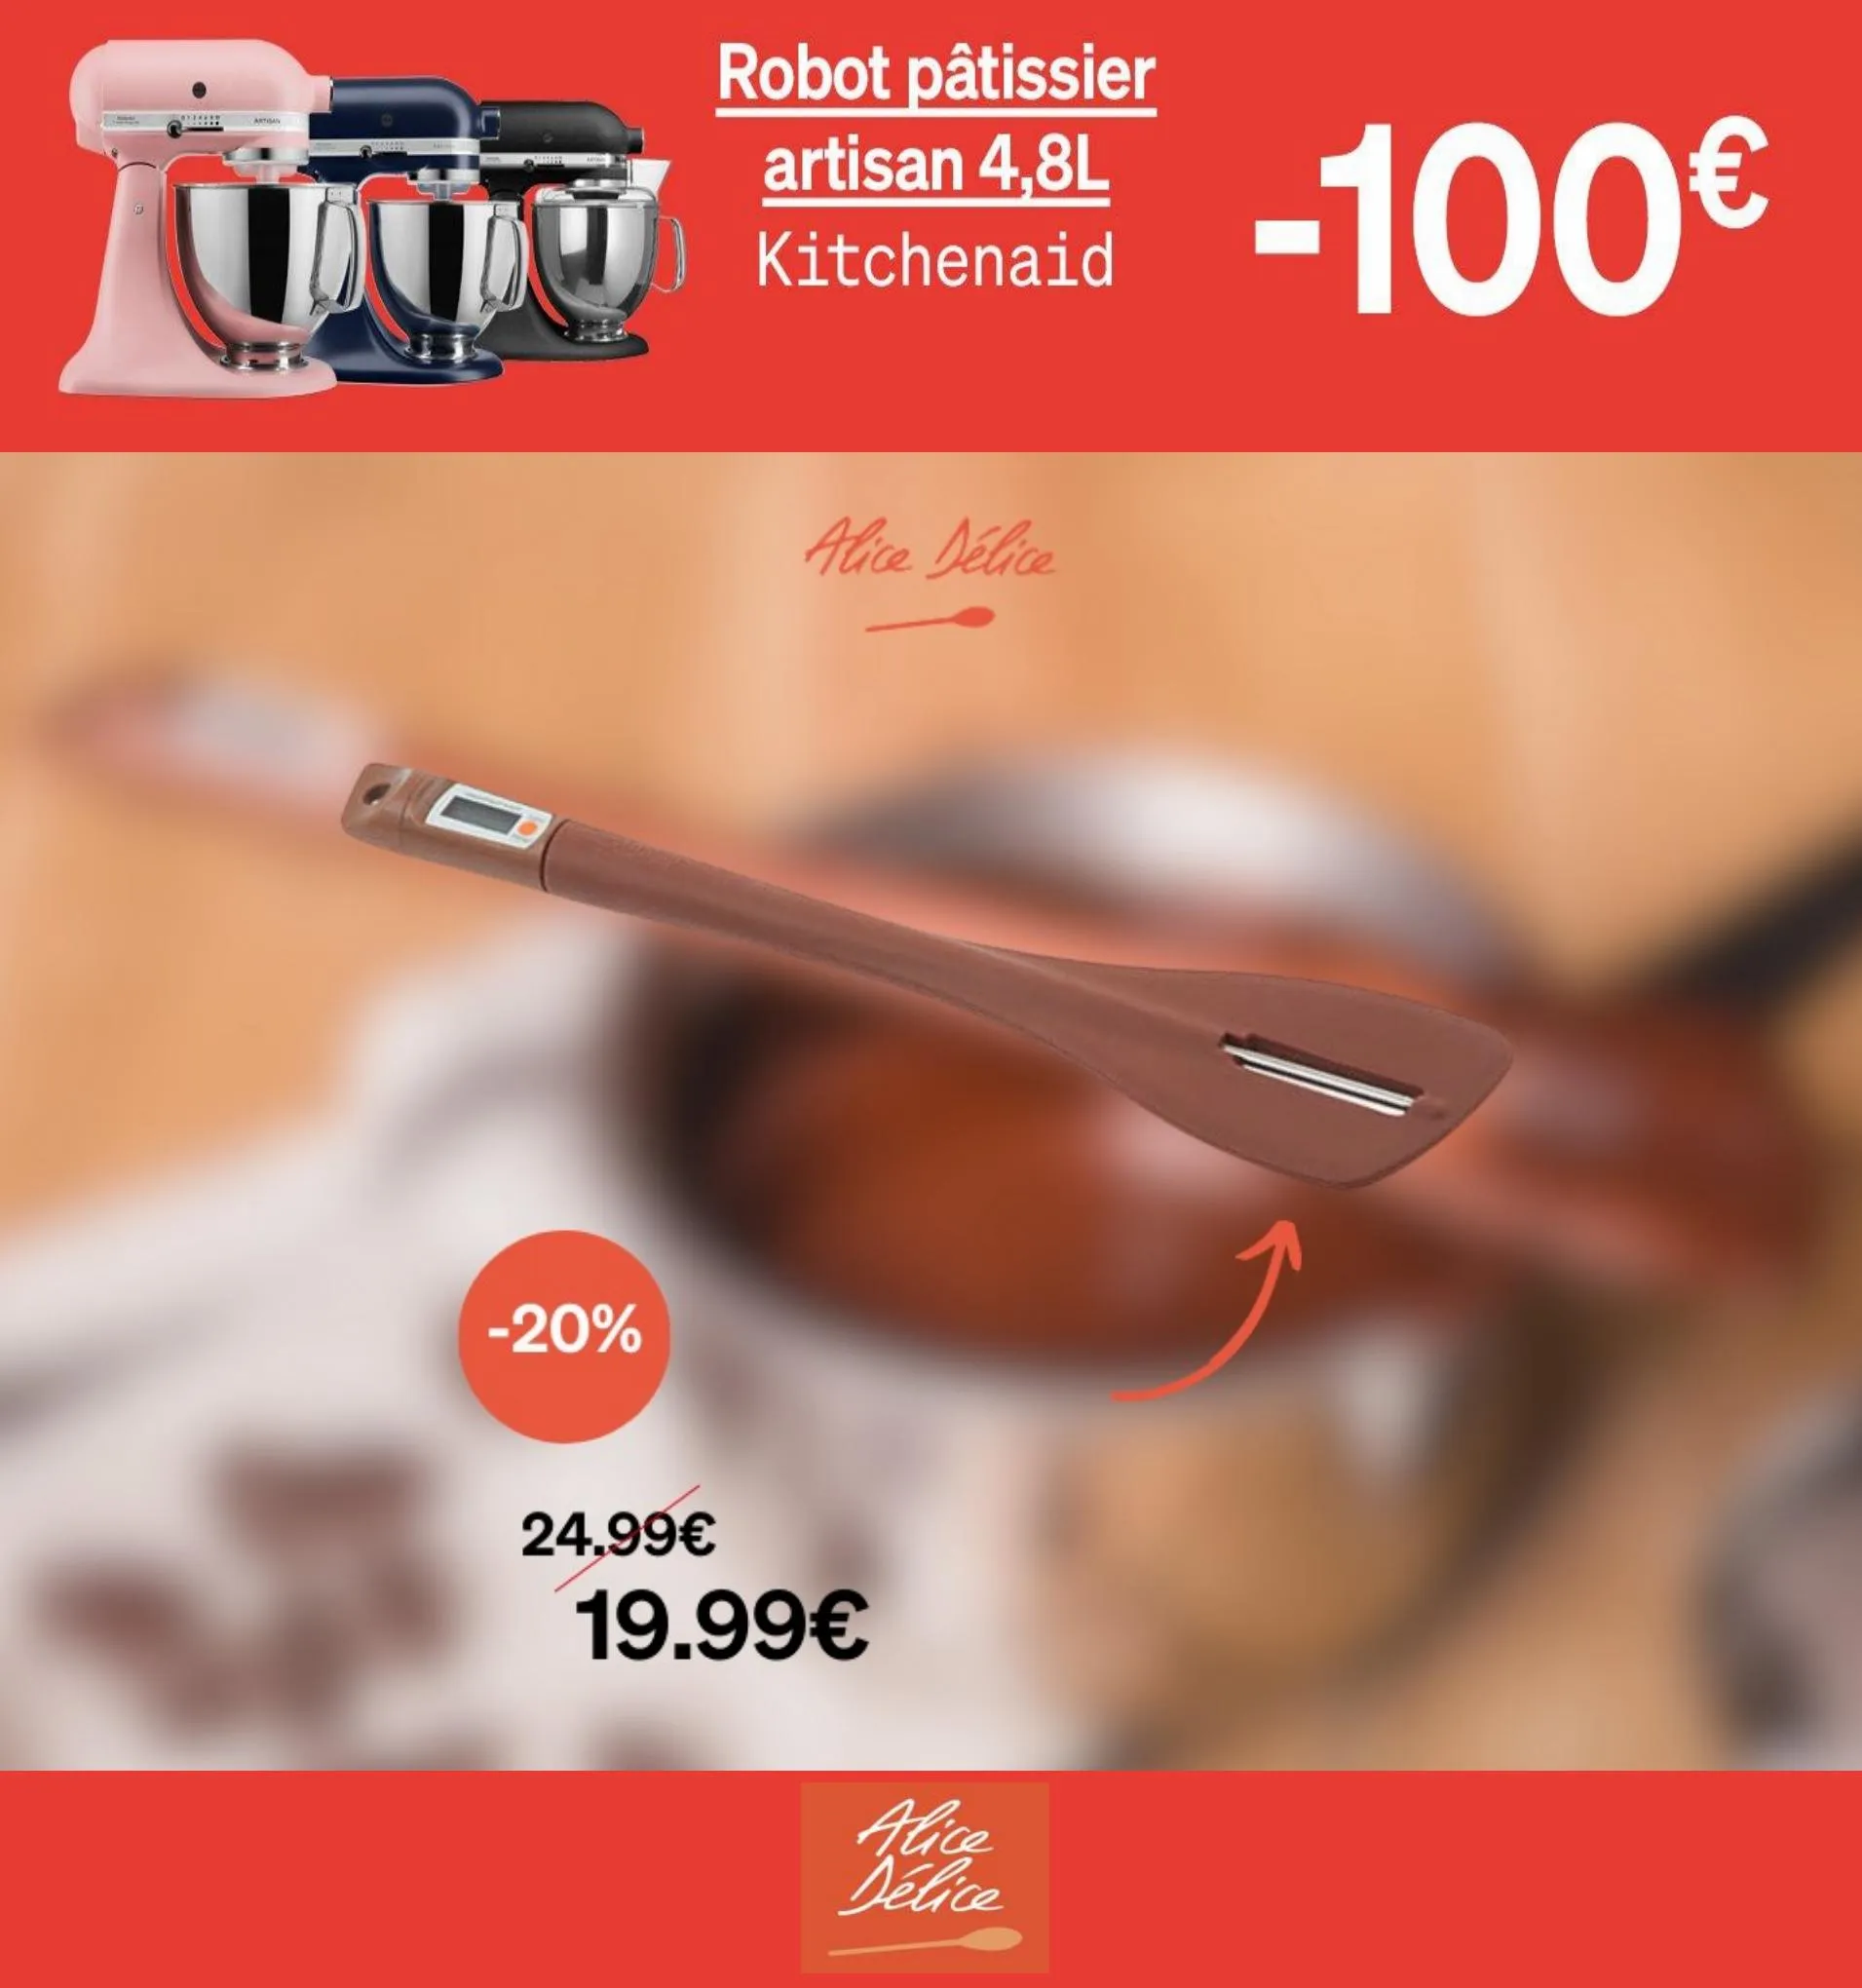 Catalogue Robot pâtisier artisan 4,8L -100€, page 00004